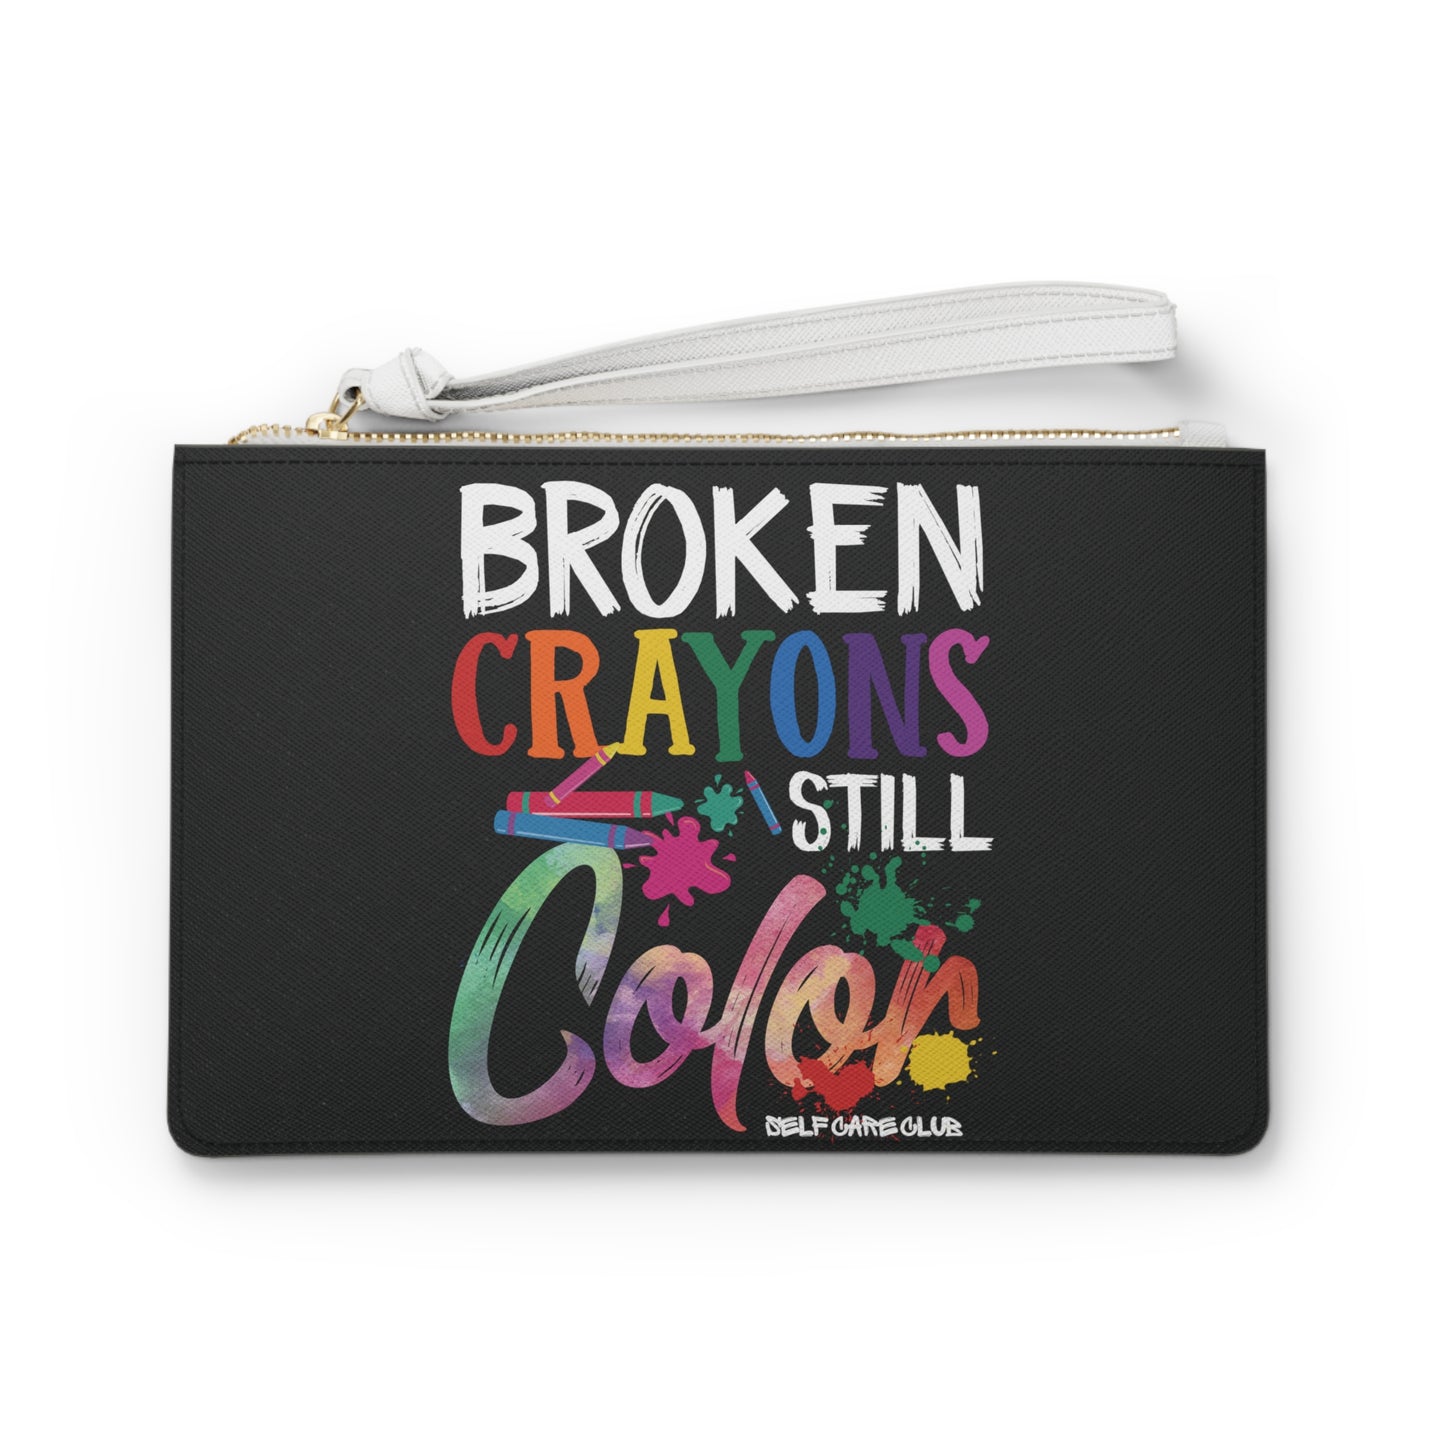 Broken Crayons Still Color BCSC Clutch Bag